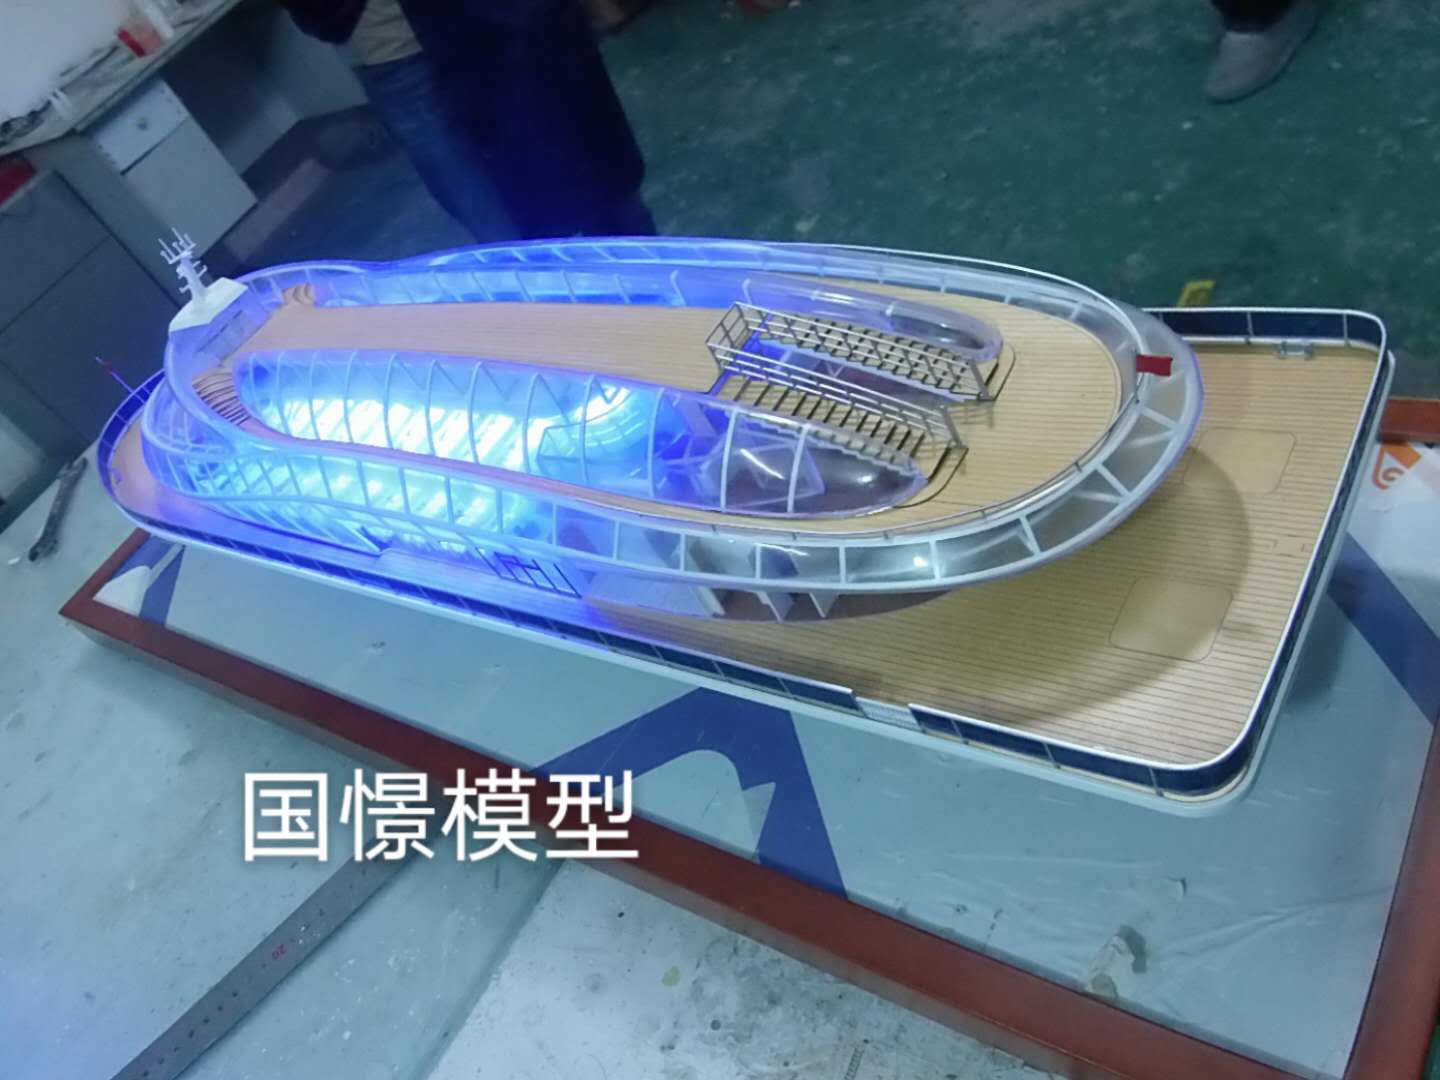 霸州市船舶模型